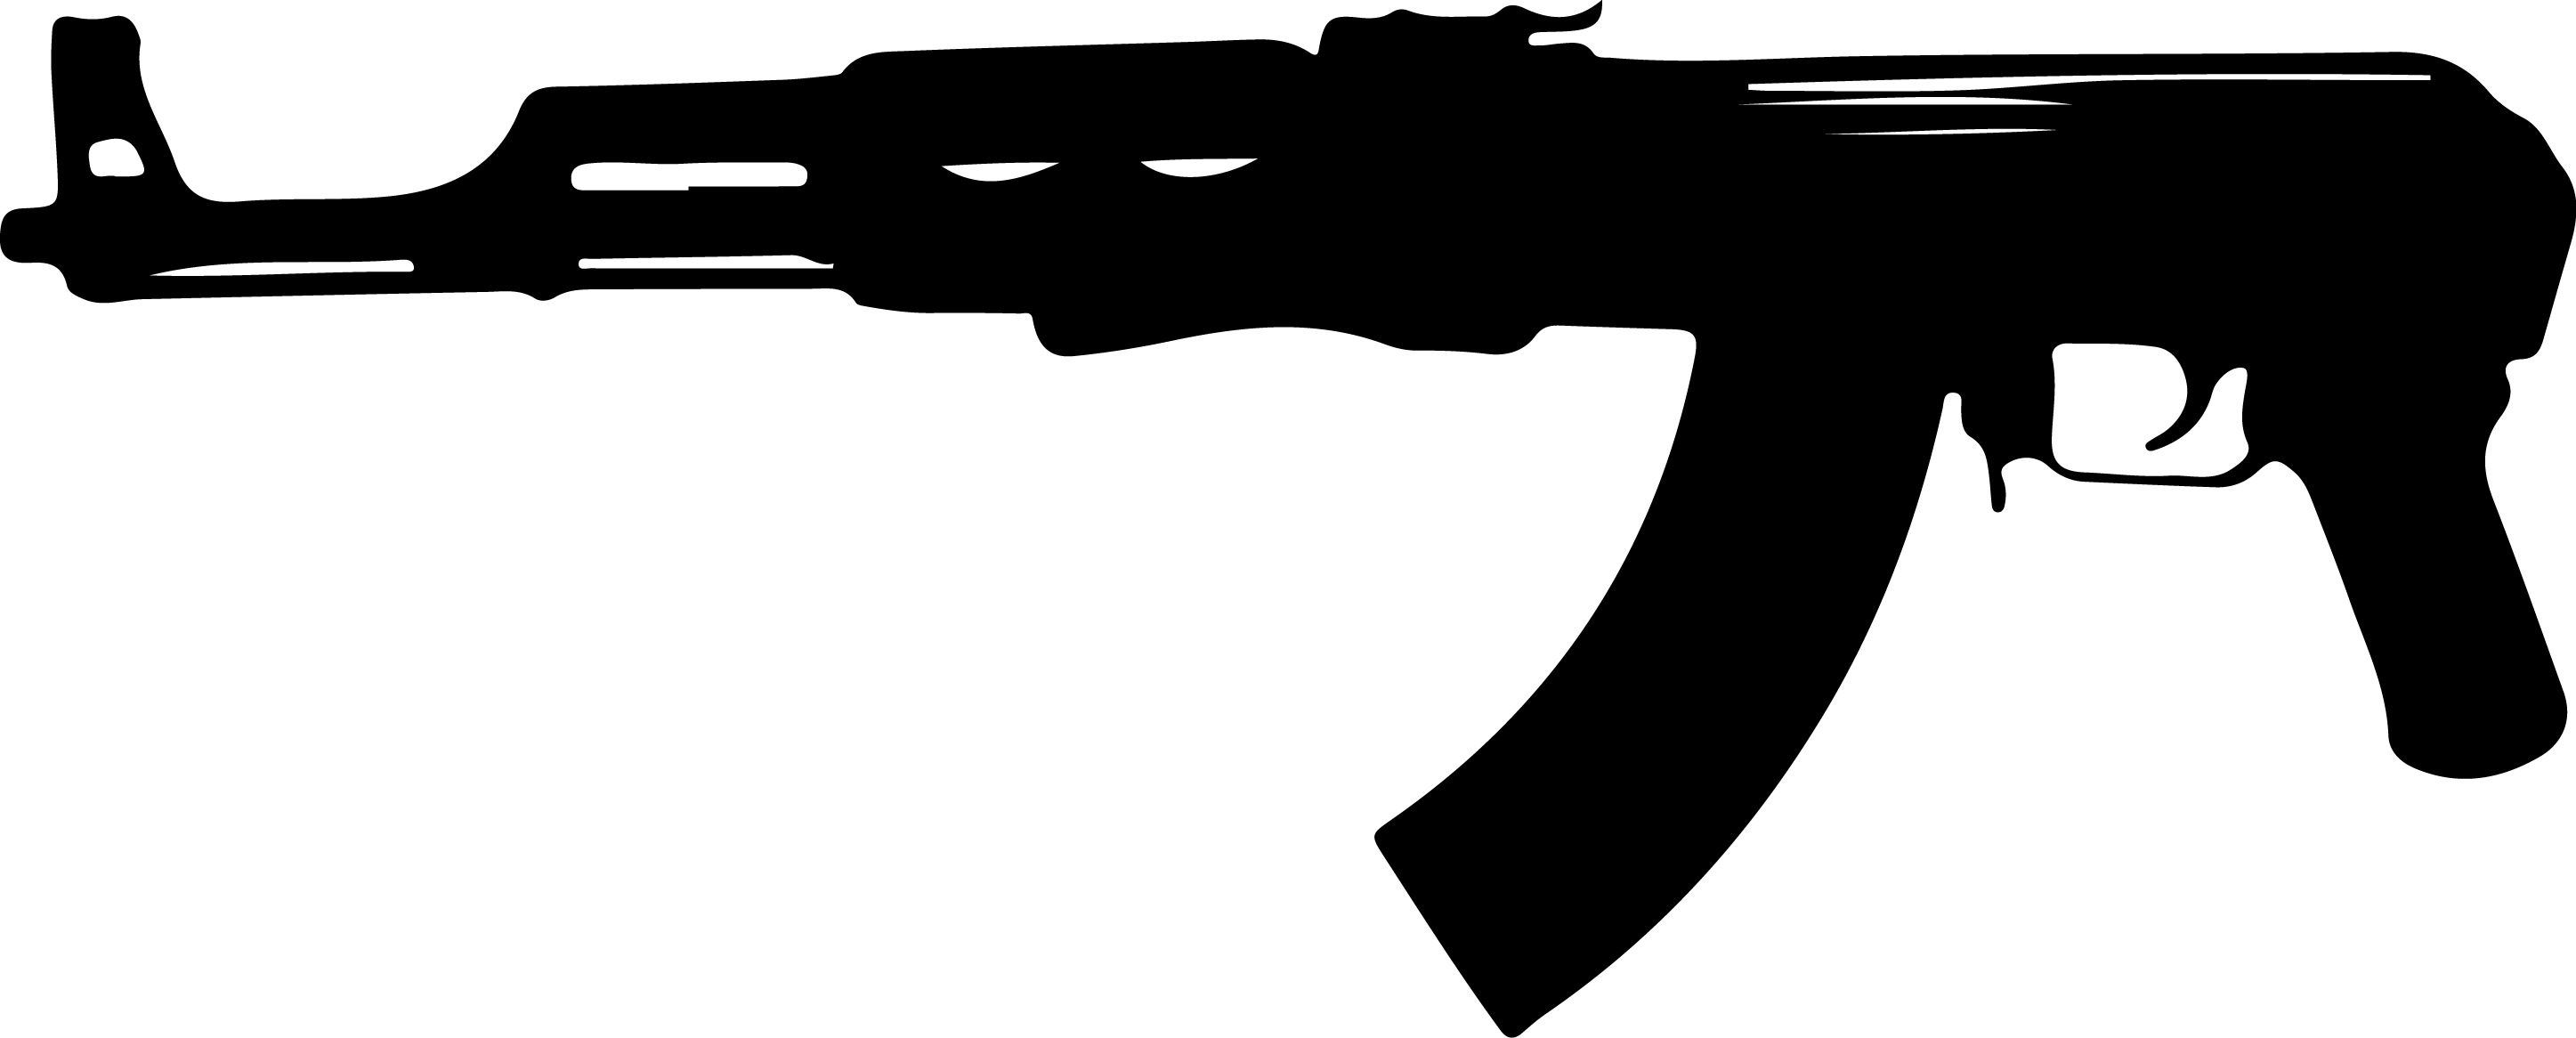 AK-47 Logo - AK-47 PNG images free download, Kalashnikov PNG